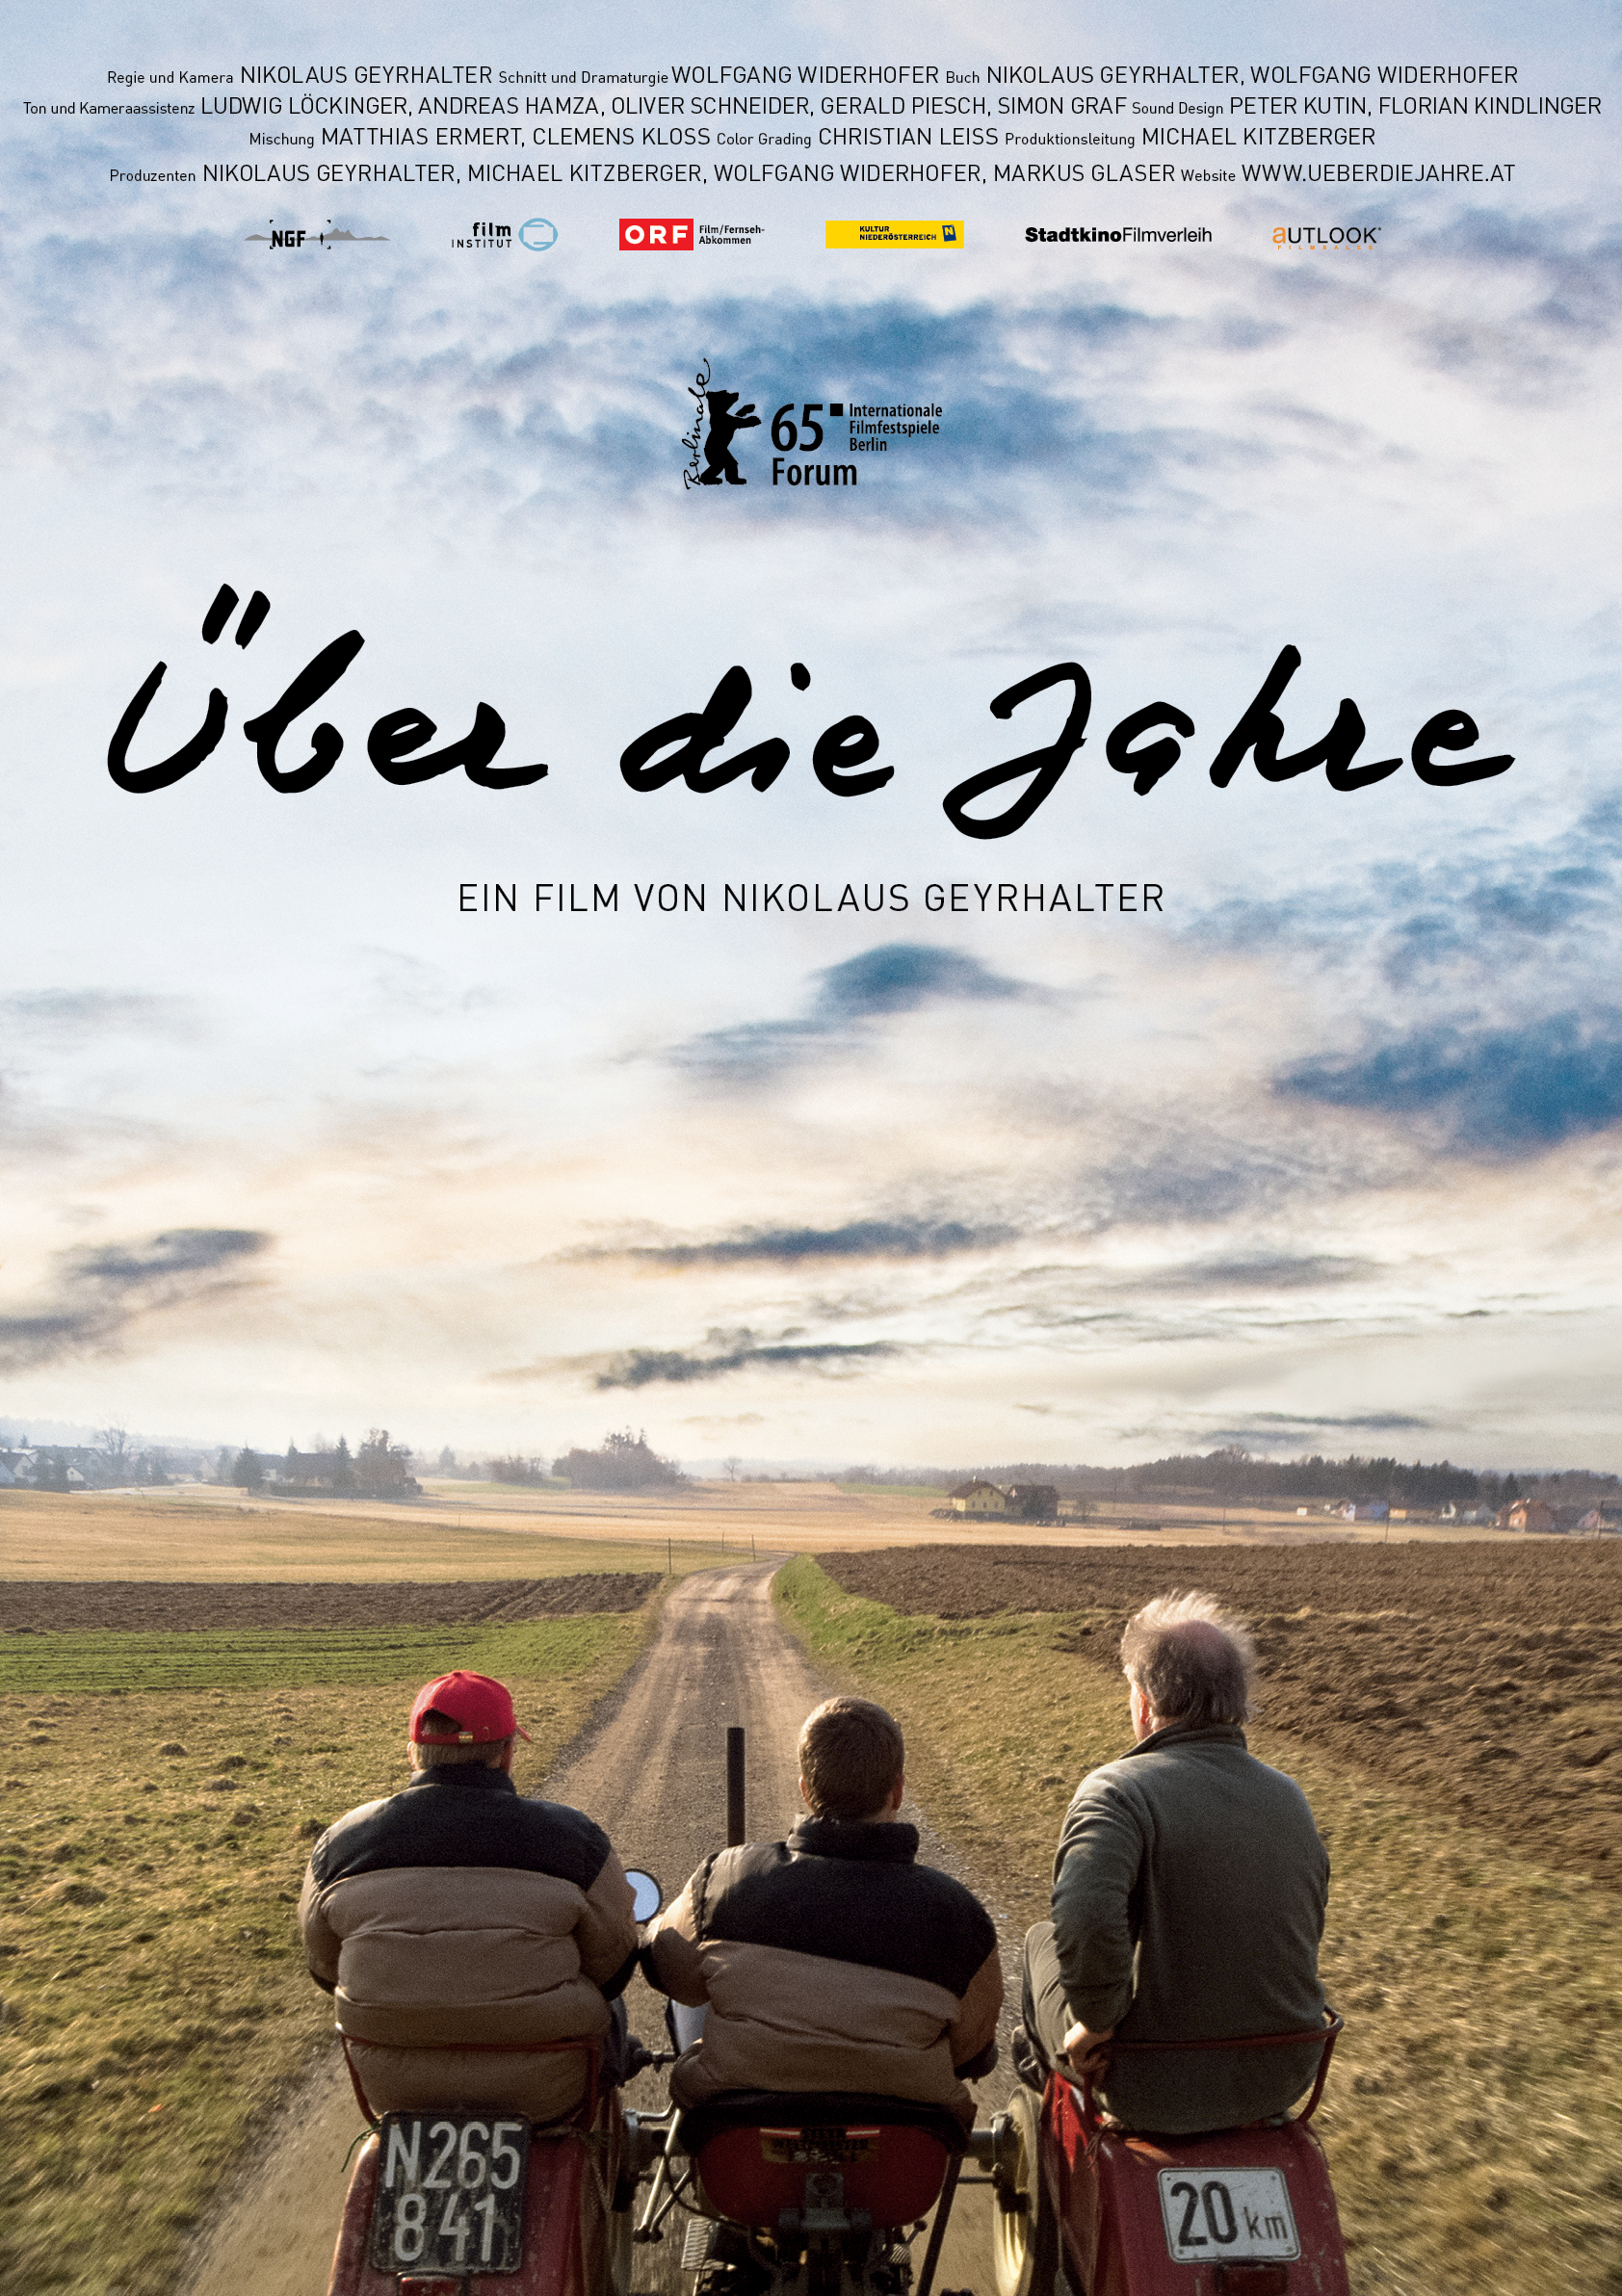 Über die Jahre (2015) with English Subtitles on DVD on DVD